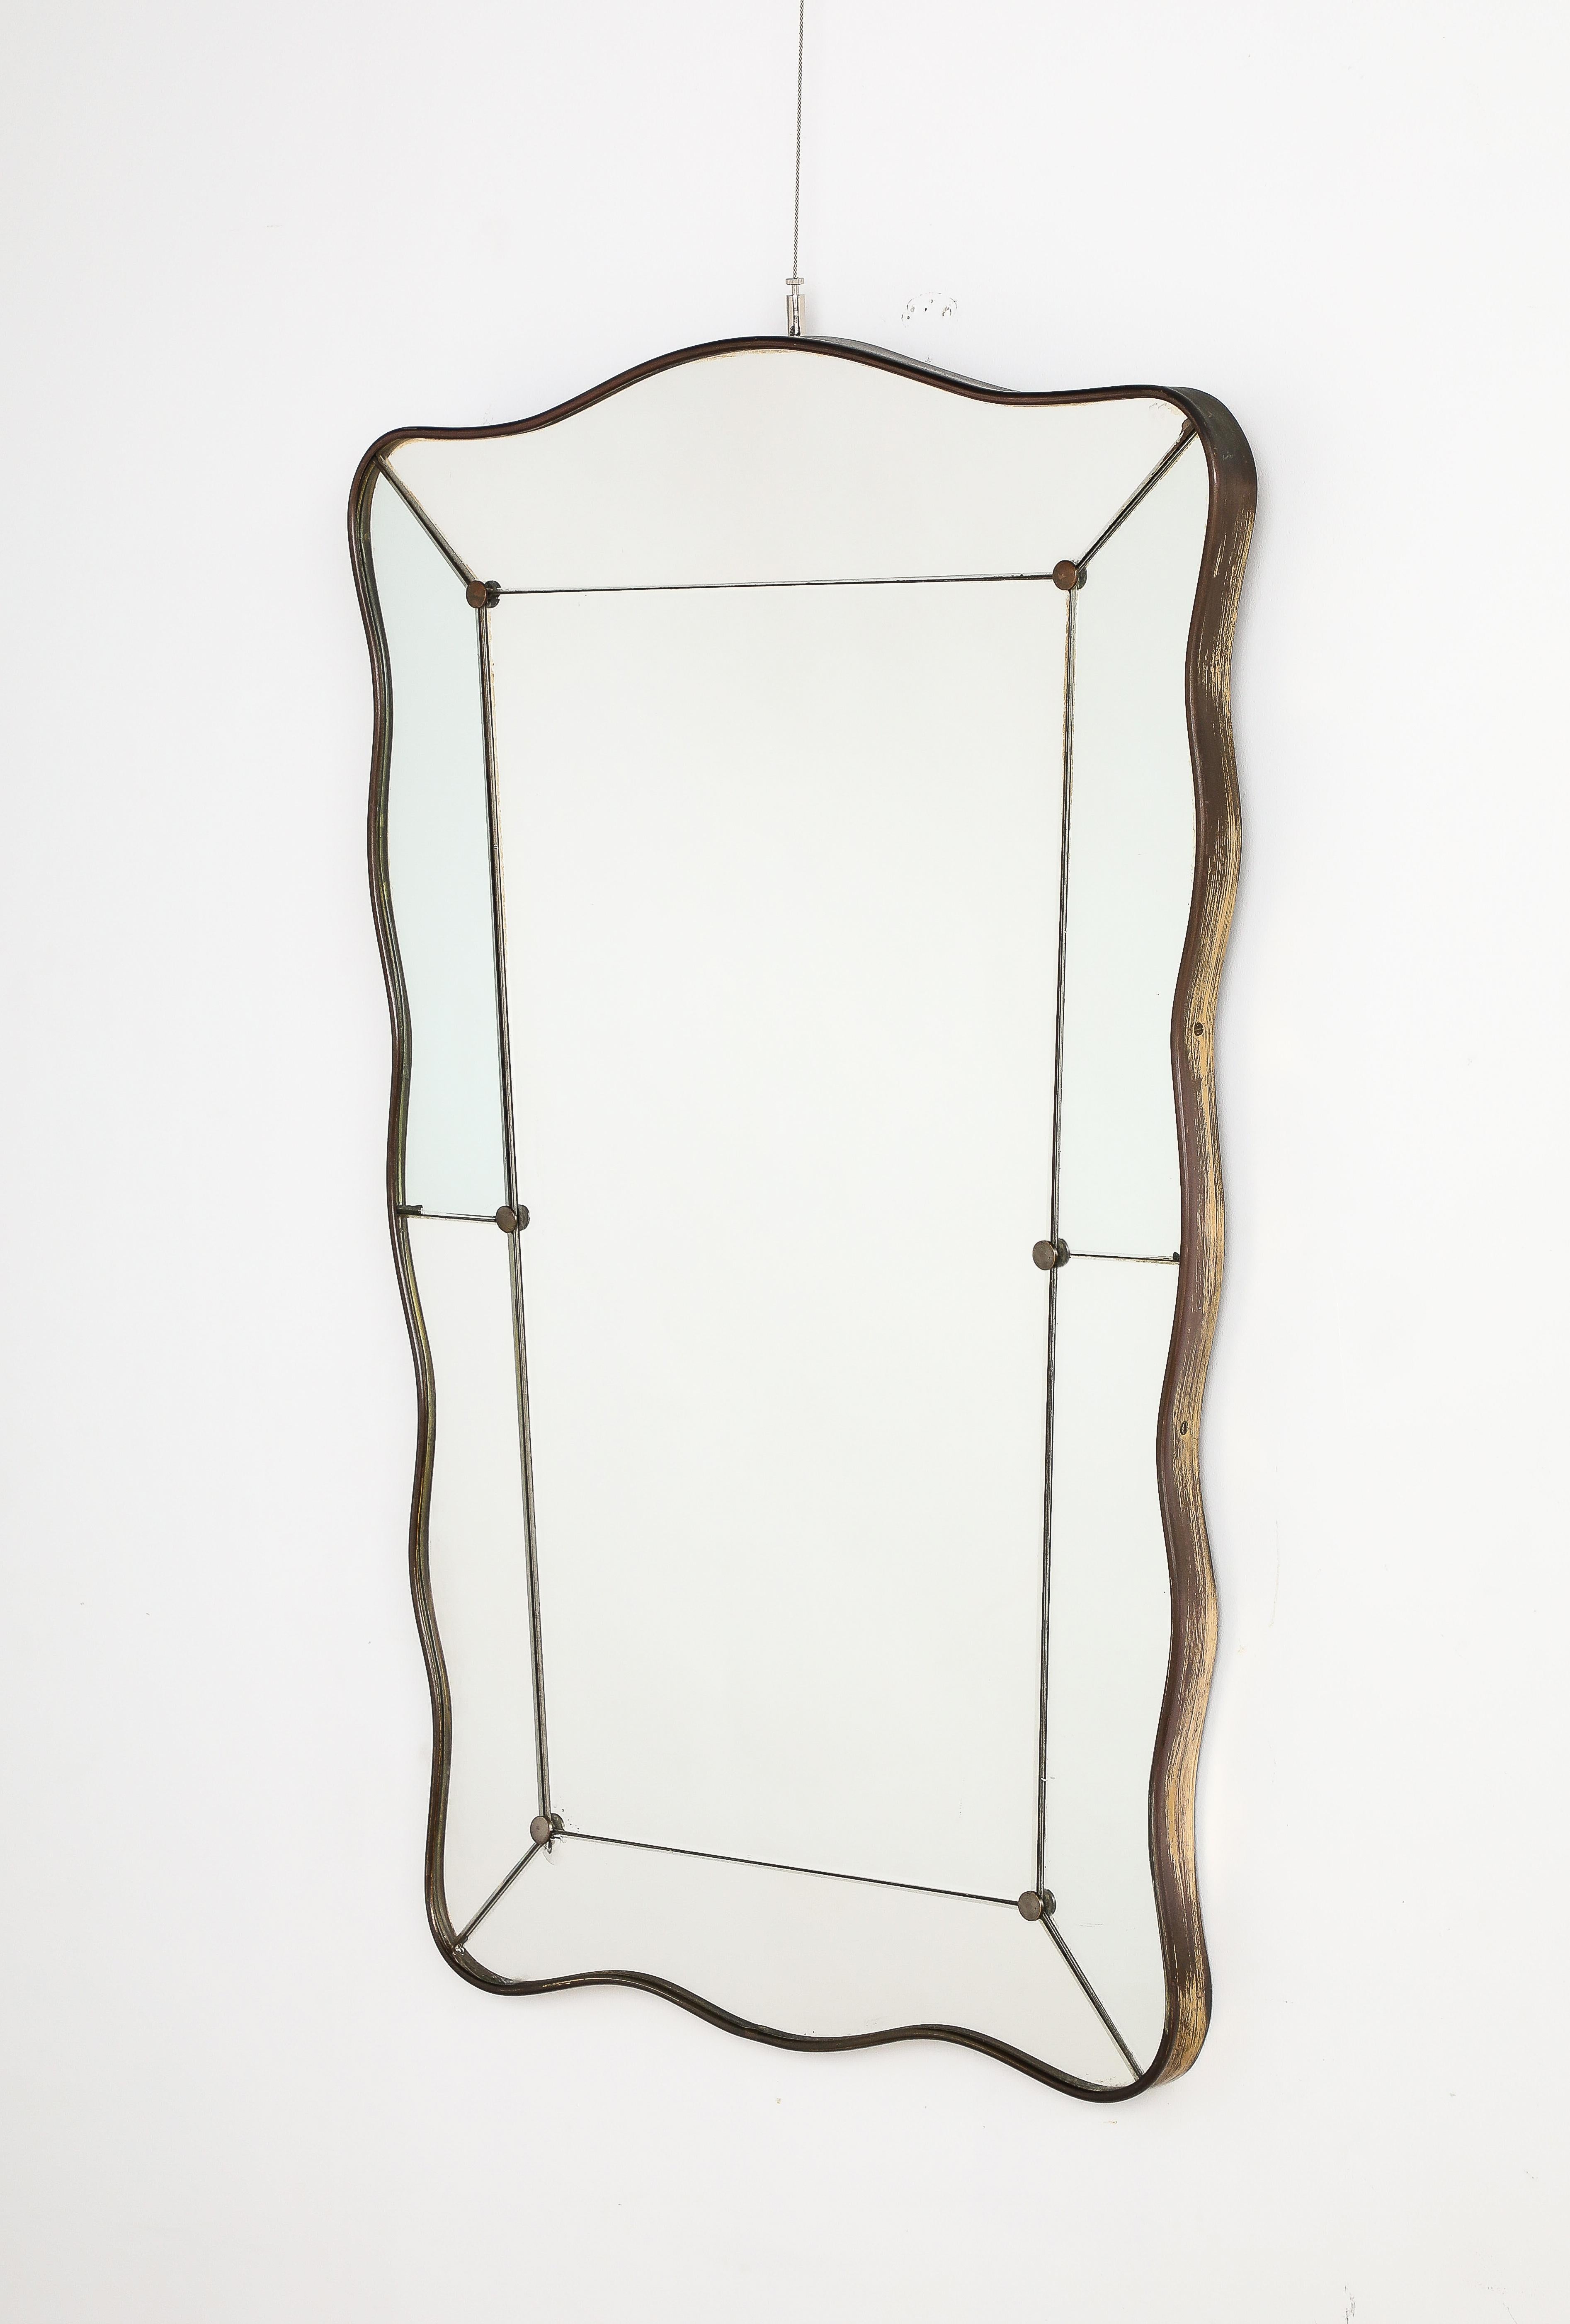 Magnifique miroir mural en laiton de forme festonnée et légèrement effilée, réalisé par l'emblématique société de design de miroirs et de verres Fontana Arte, Milan, vers 1940.  Le panneau de verre rectangulaire est bordé par des plaques de verre